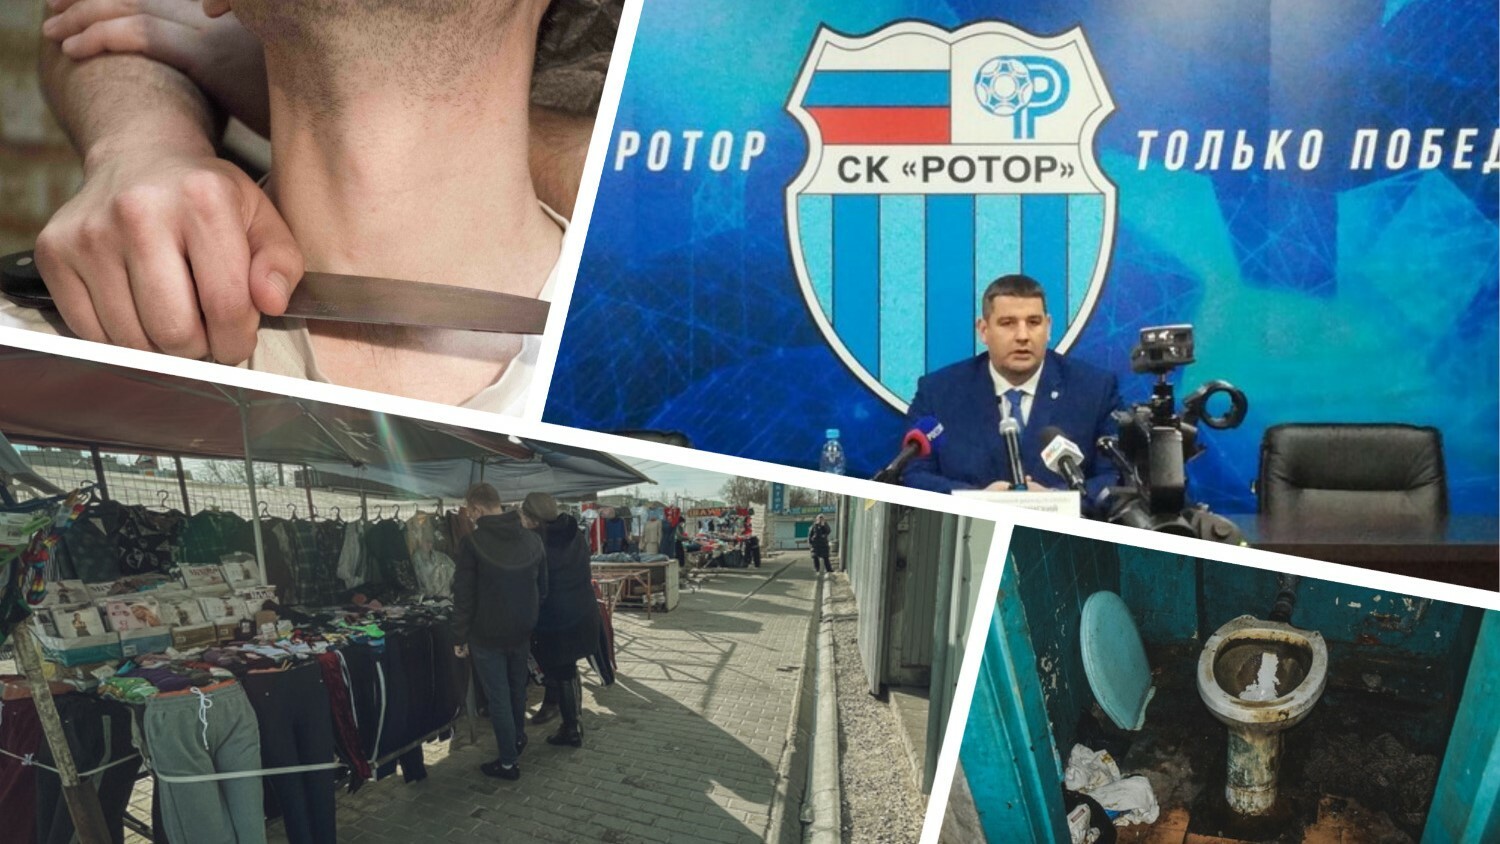 Резня в кафе, страшные туалеты, очищение «Ротора»: новости недели в Волгограде